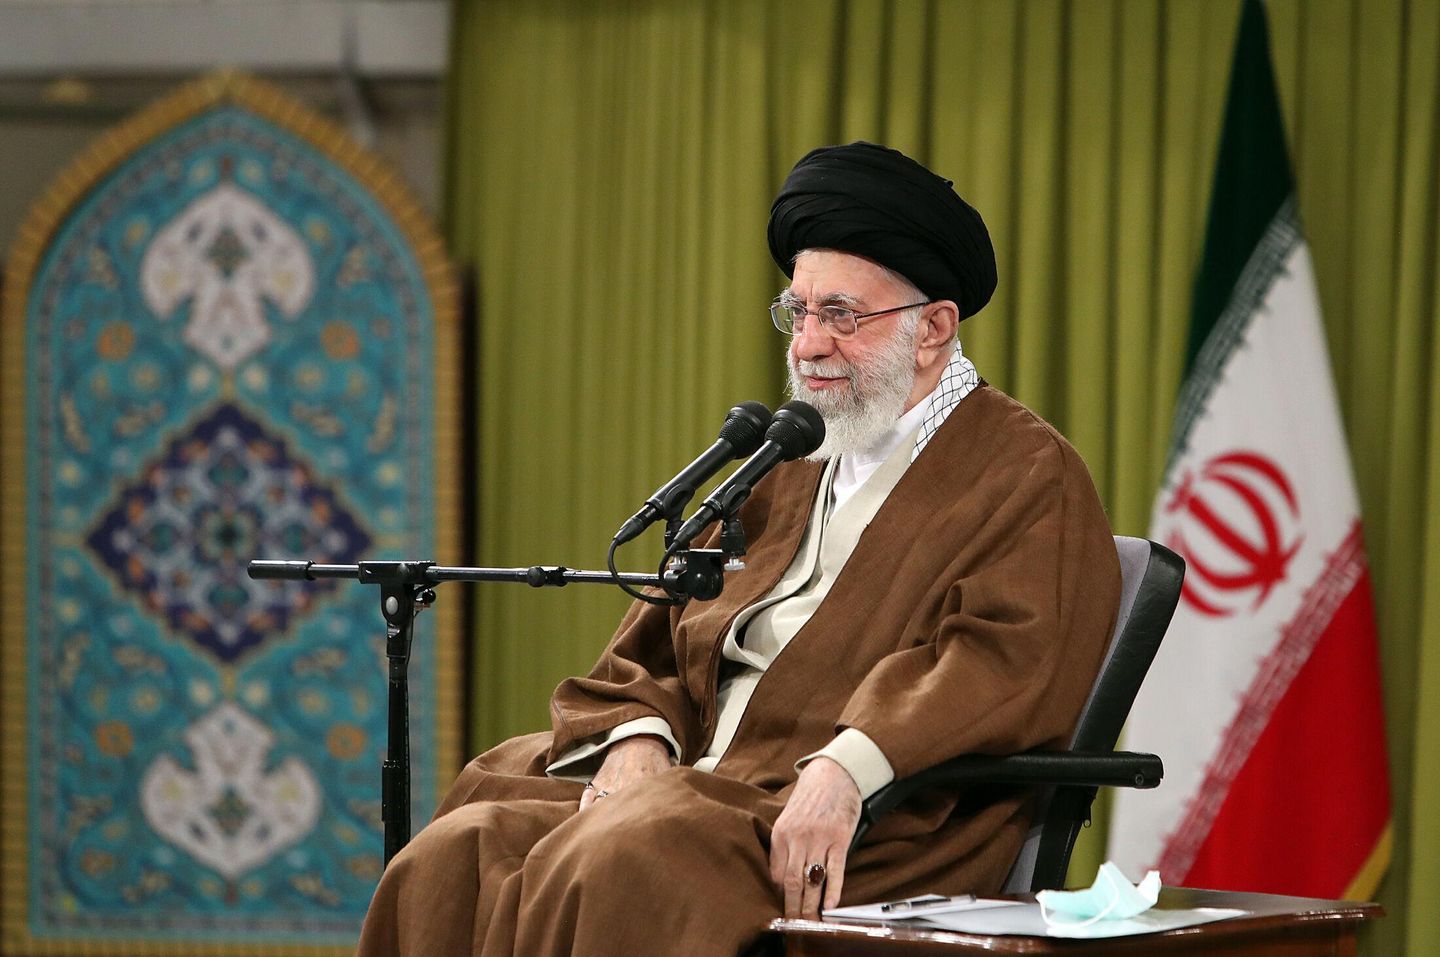 İran'ın üst düzey lideri şüpheli zehirlenmelerin 'affedilemez' olduğunu söyledi